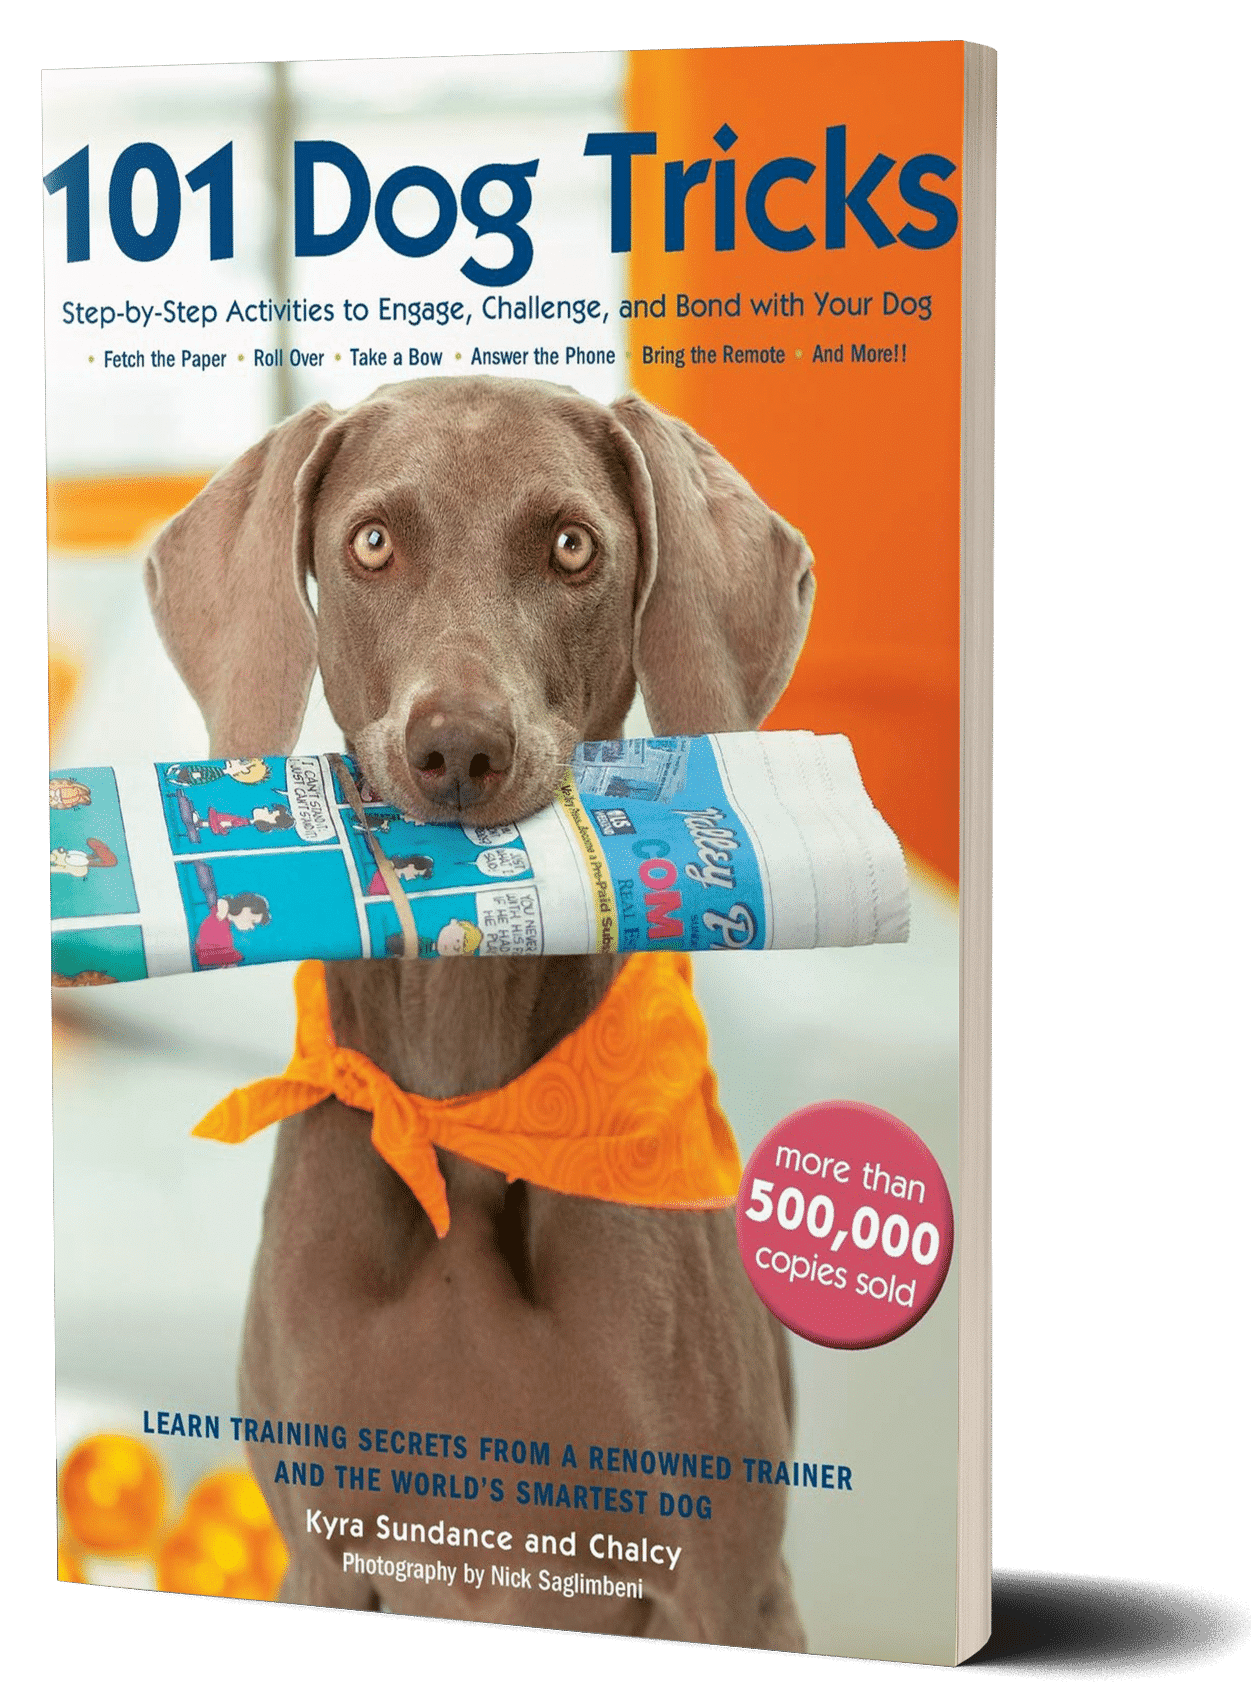 101 dog tricks book cover